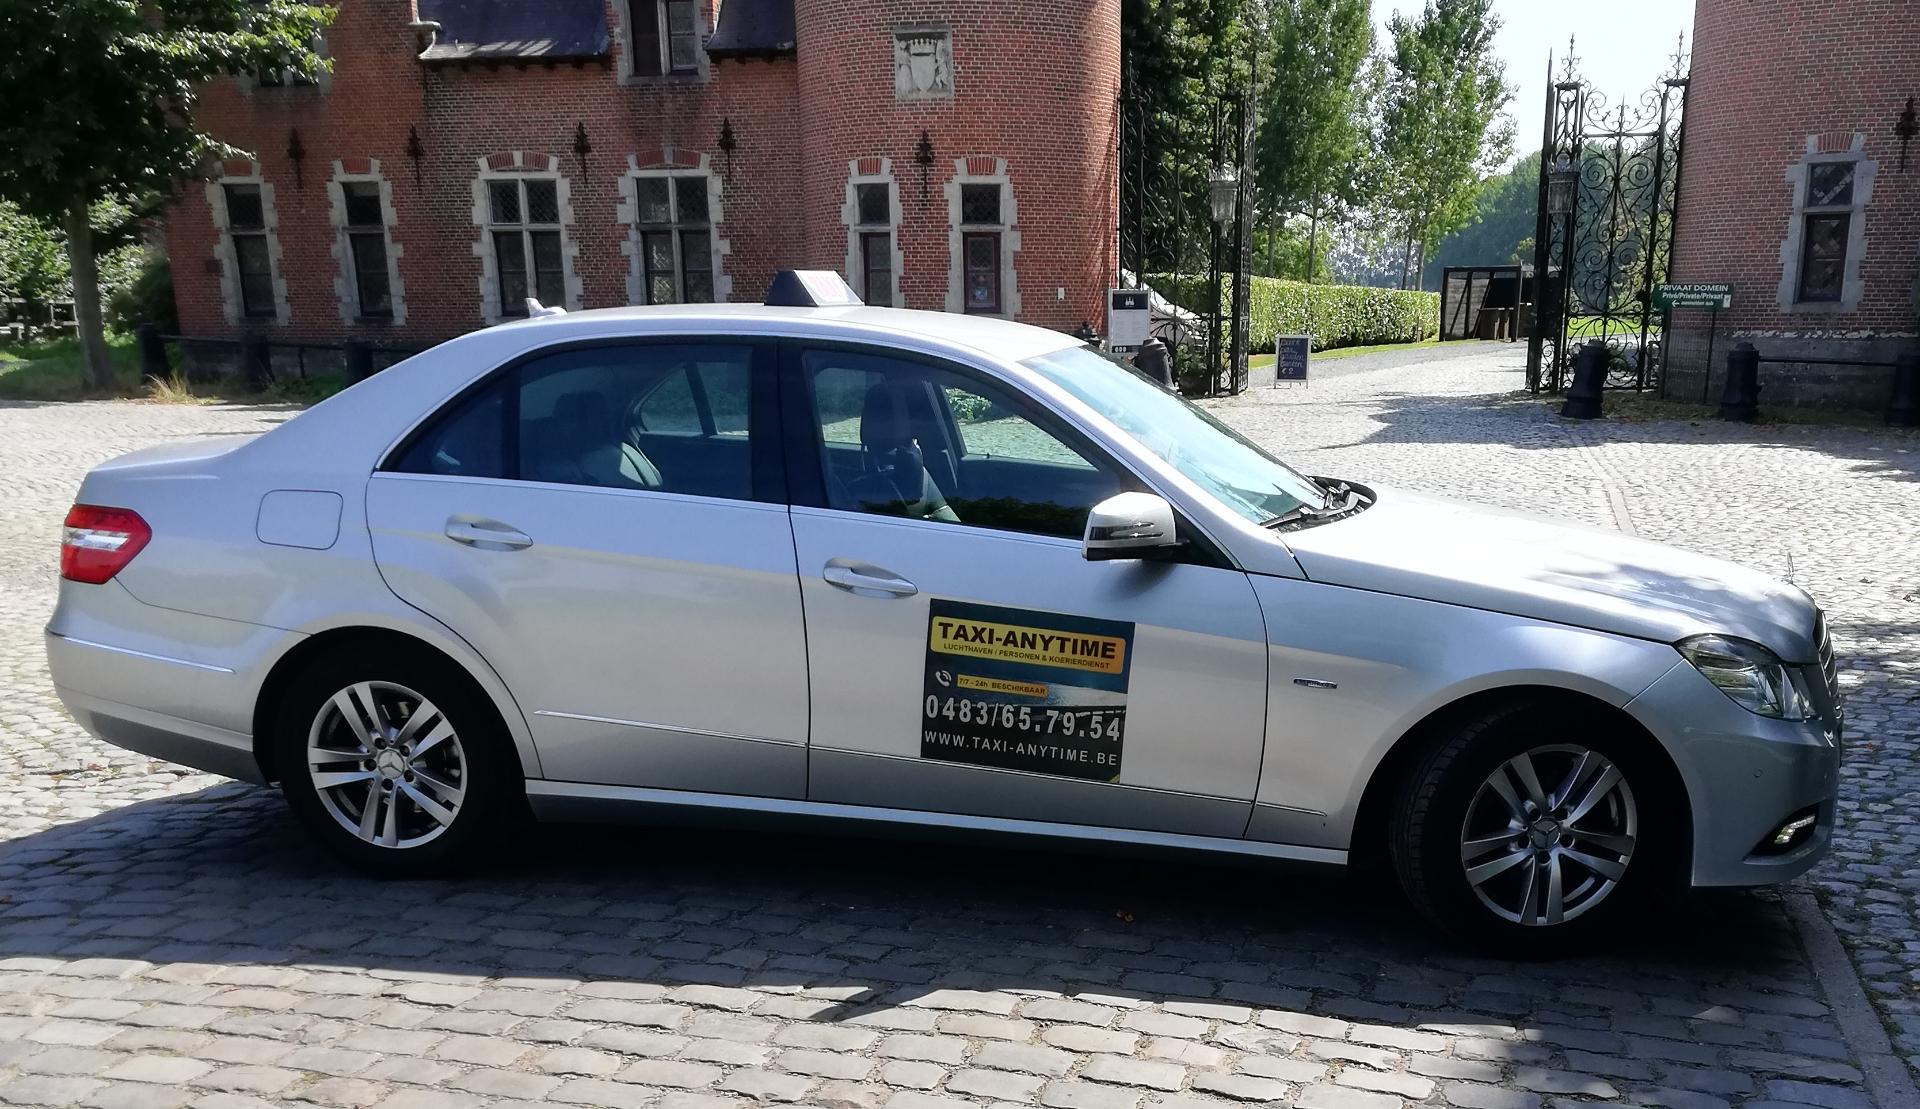 luxe-autoverhuurders Wilsele Taxi-Anytime